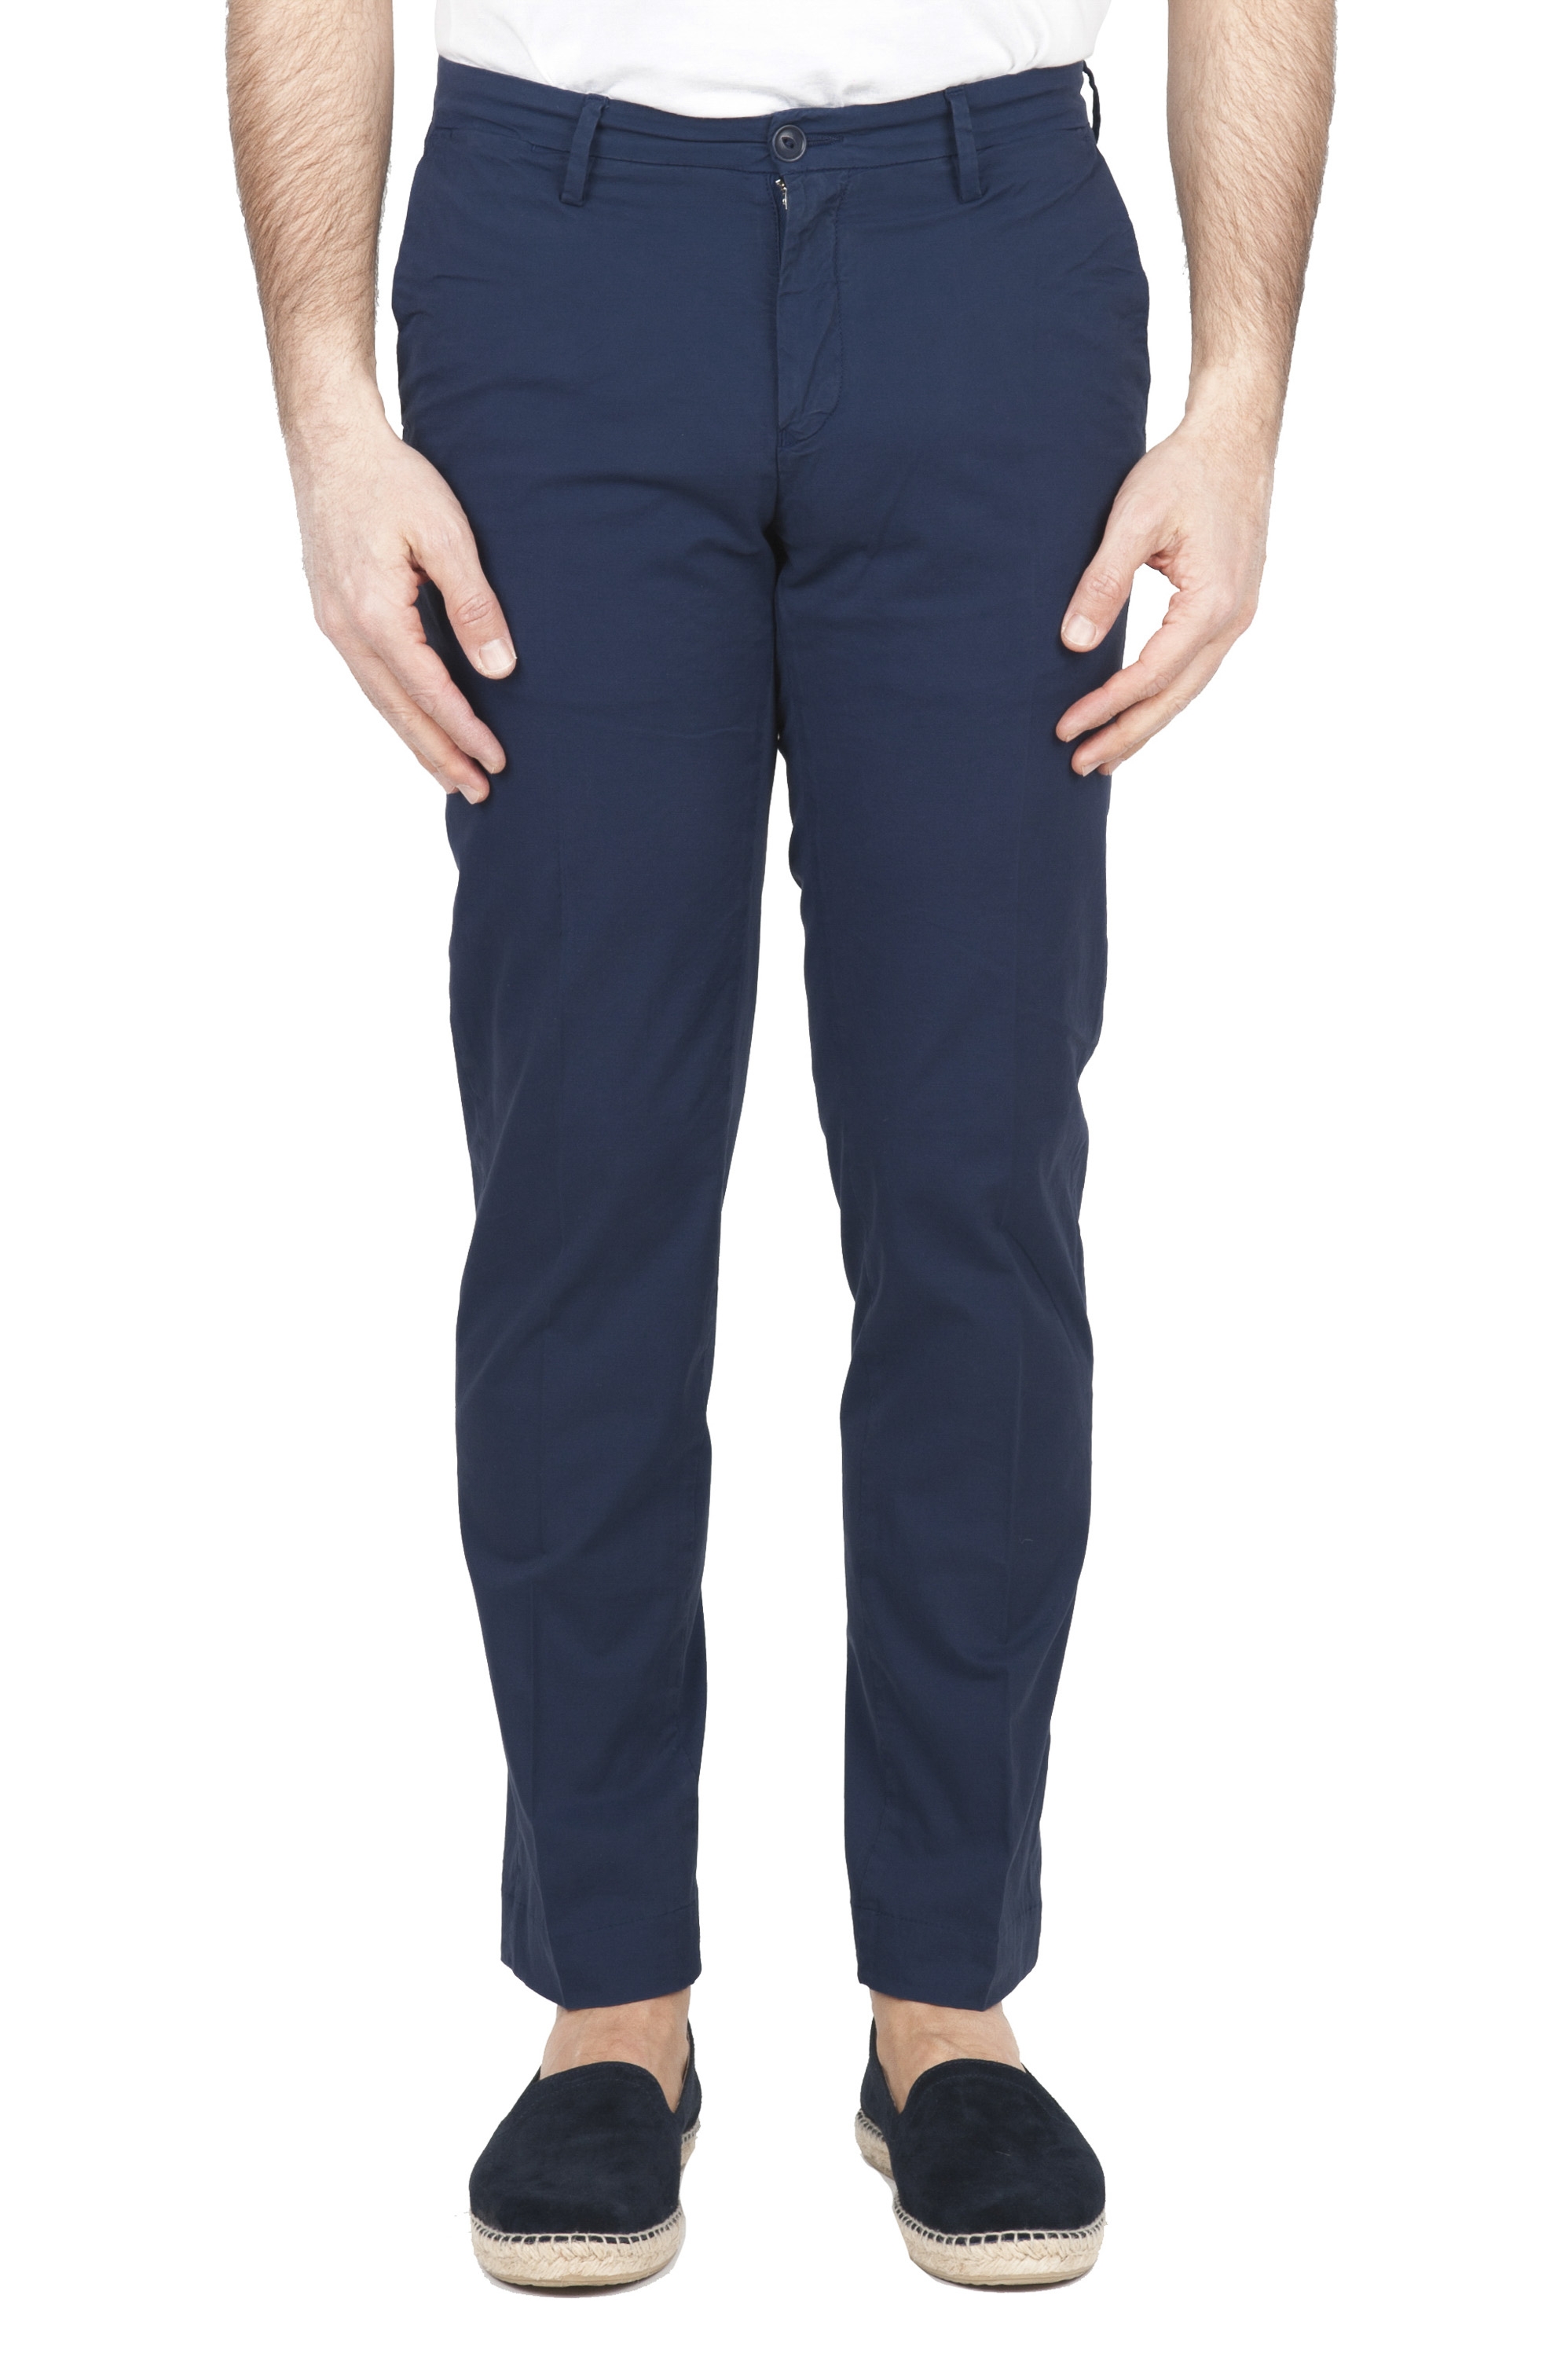 SBU 01684 Pantalones chinos clásicos en algodón elástico azul marino 01